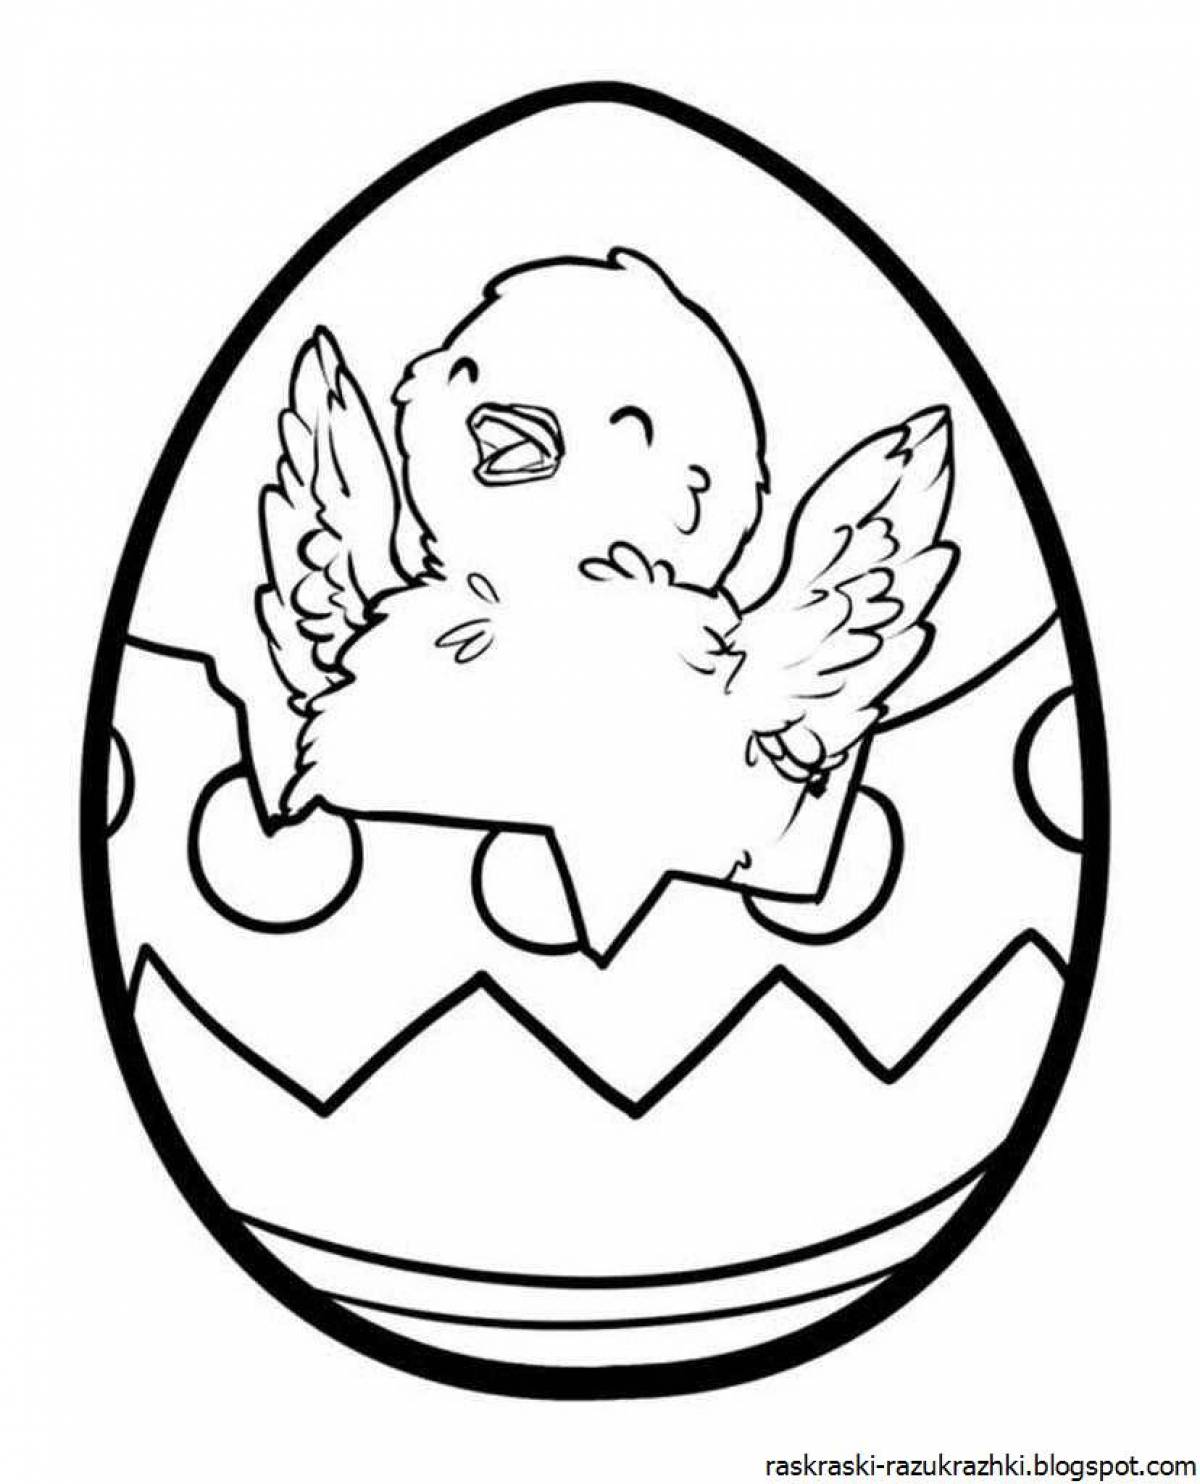 Egg #1